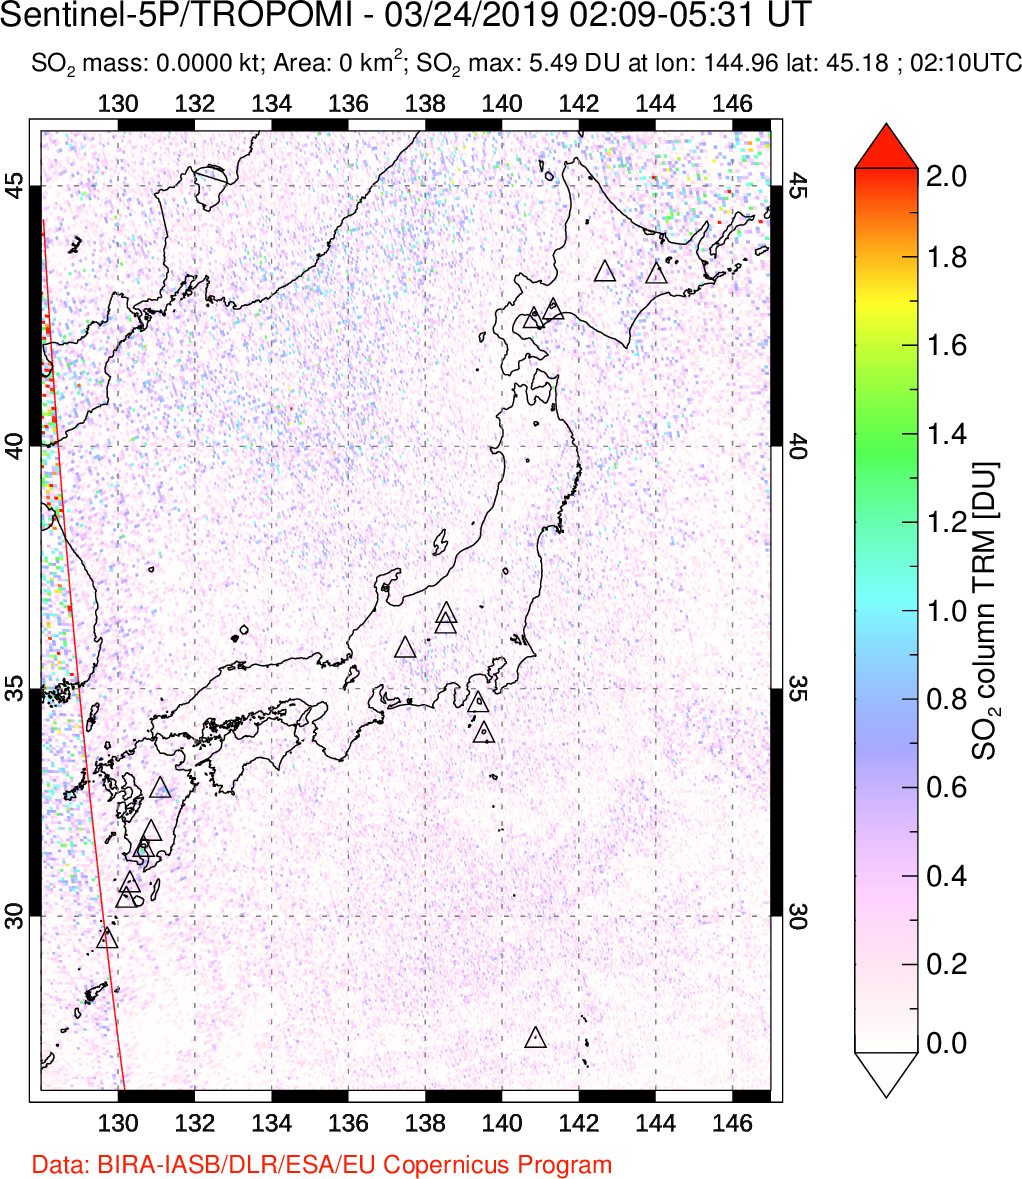 A sulfur dioxide image over Japan on Mar 24, 2019.